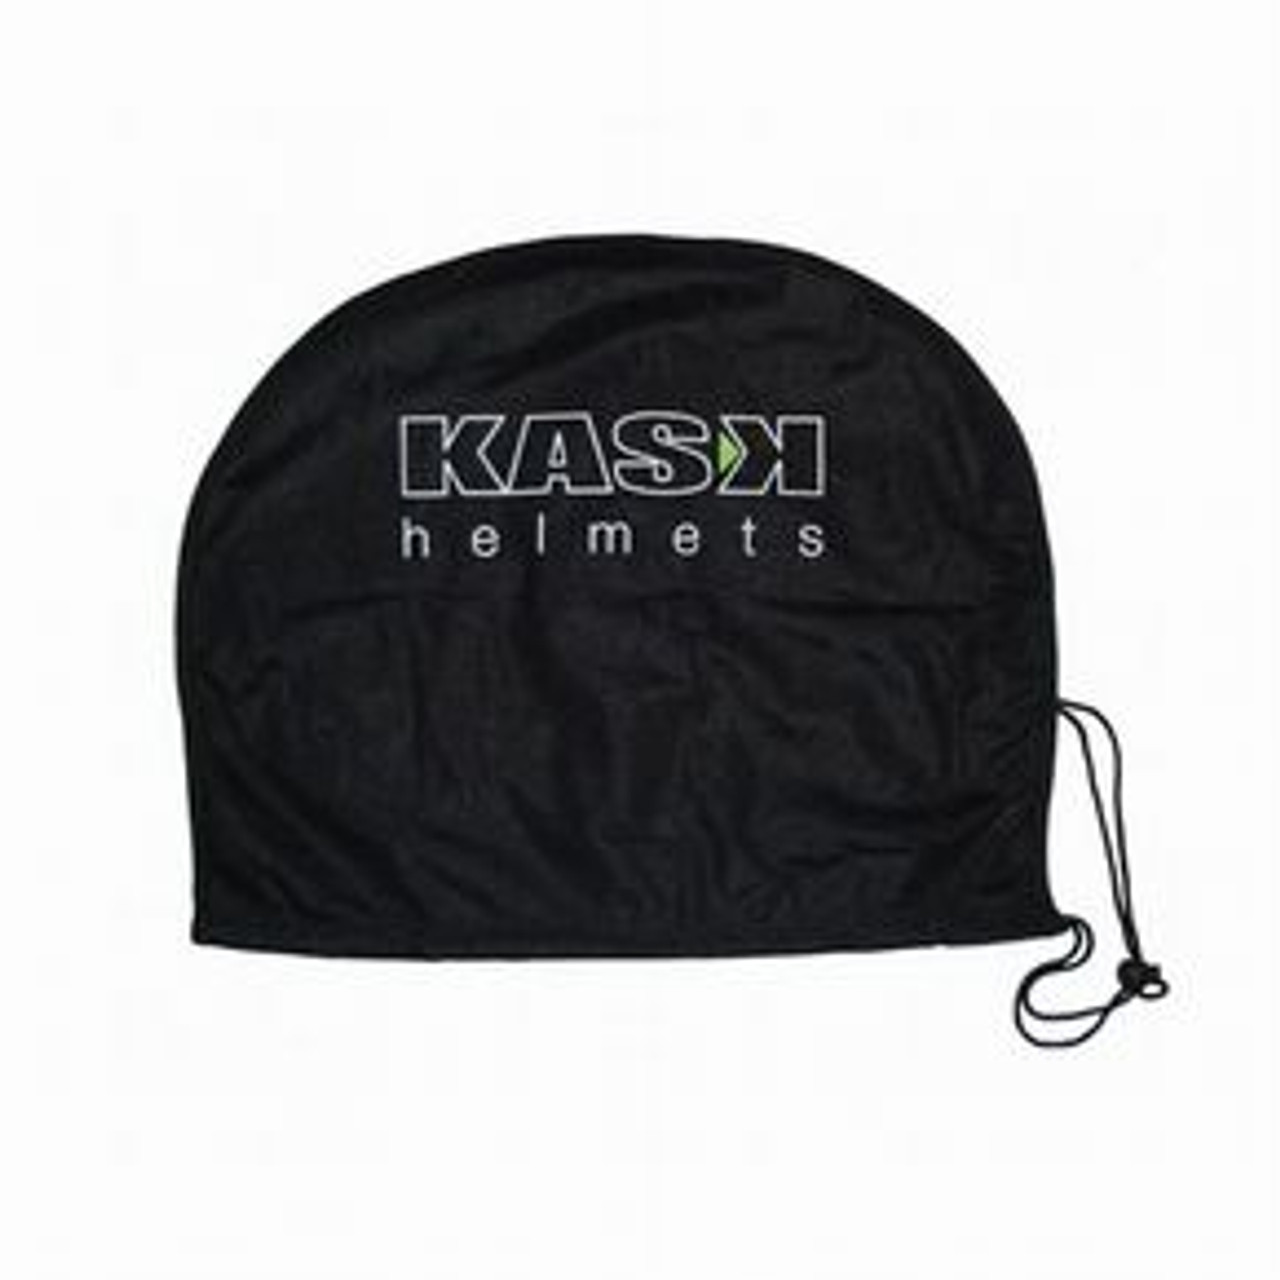 KASK Helmet Bag